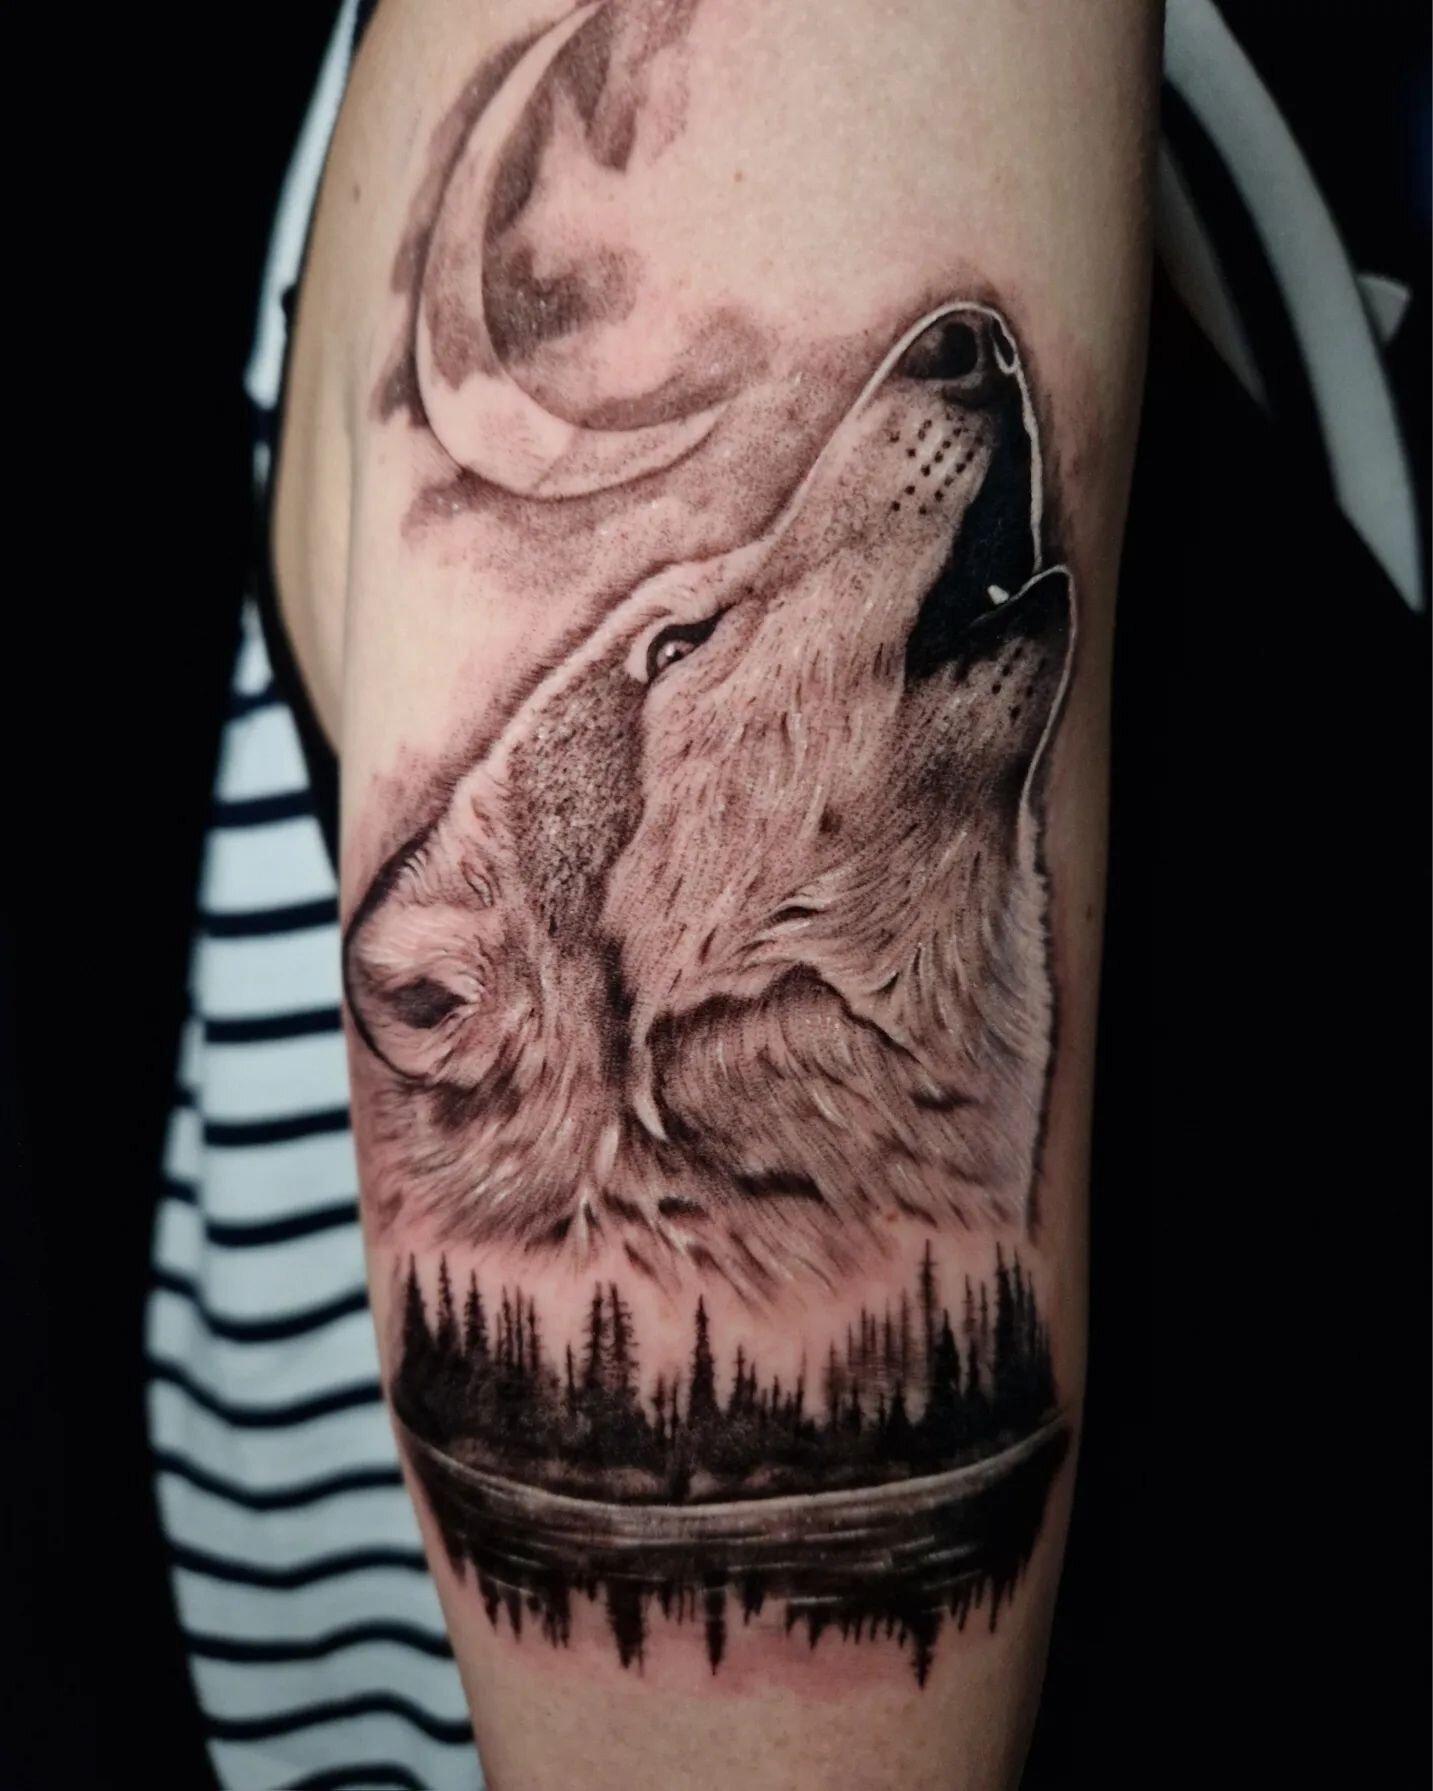 Merci Laetitia de m'avoir fait confiance pour ton 1er tatouage 🙏 

R&eacute;alis&eacute; chez @le.spot.tattoo.nantes 

Infos &amp; contact uniquement par mail arnaud.gomet@gmail.com 

#wolf #wolftattoo #wildlifetattoo #realismtattoo #realistictattoo